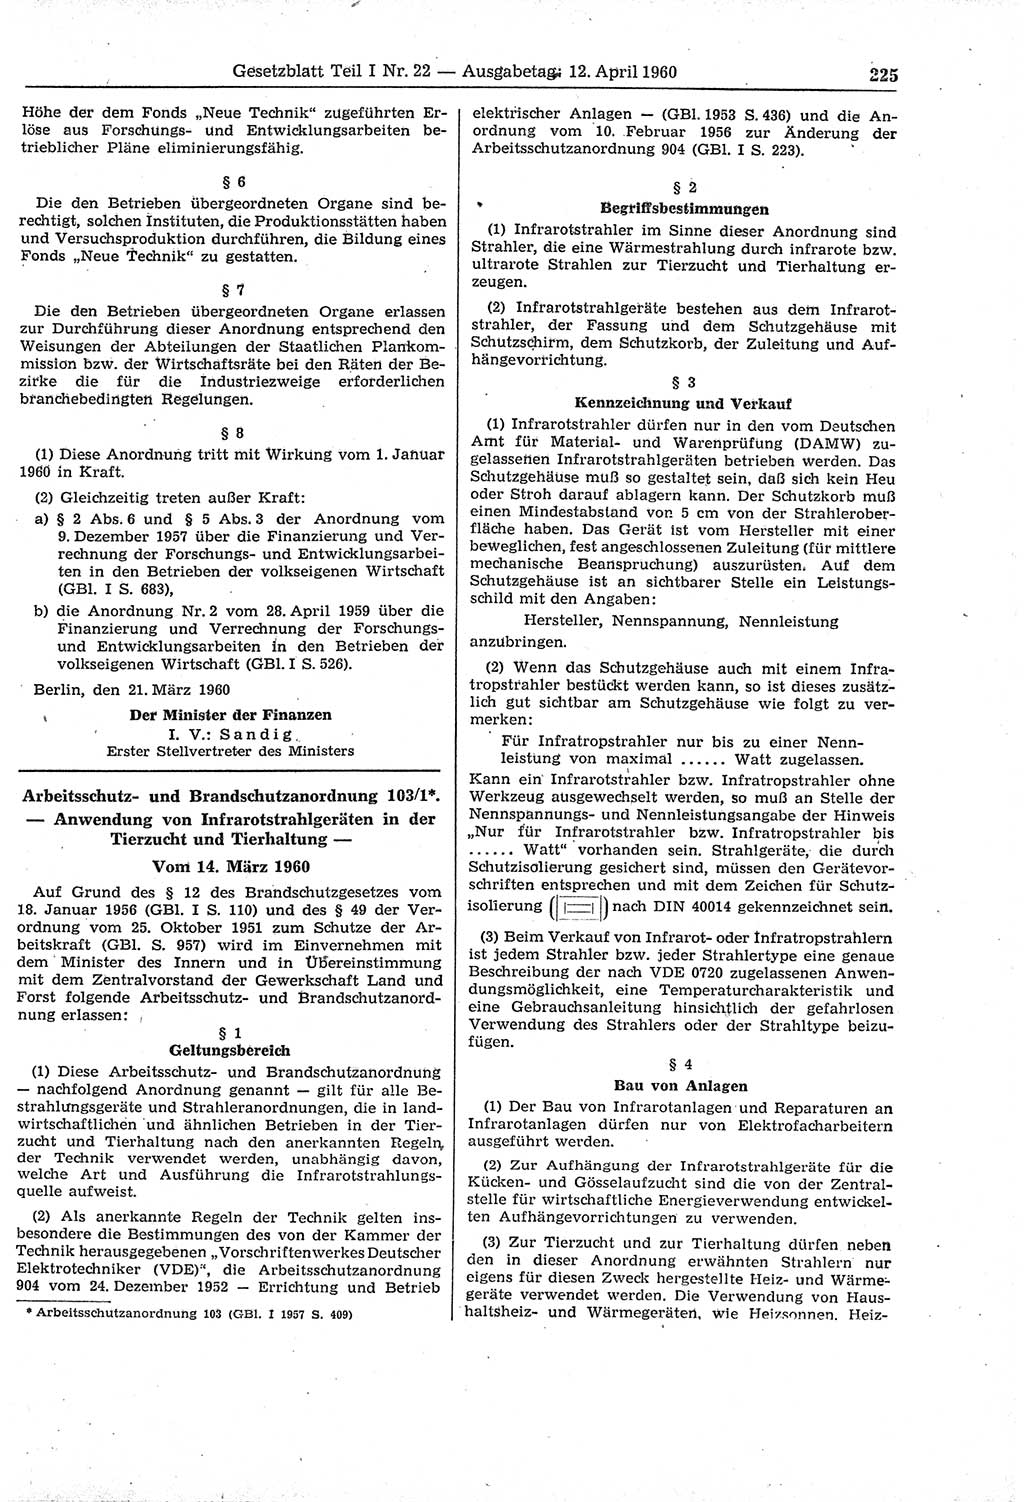 Gesetzblatt (GBl.) der Deutschen Demokratischen Republik (DDR) Teil Ⅰ 1960, Seite 225 (GBl. DDR Ⅰ 1960, S. 225)